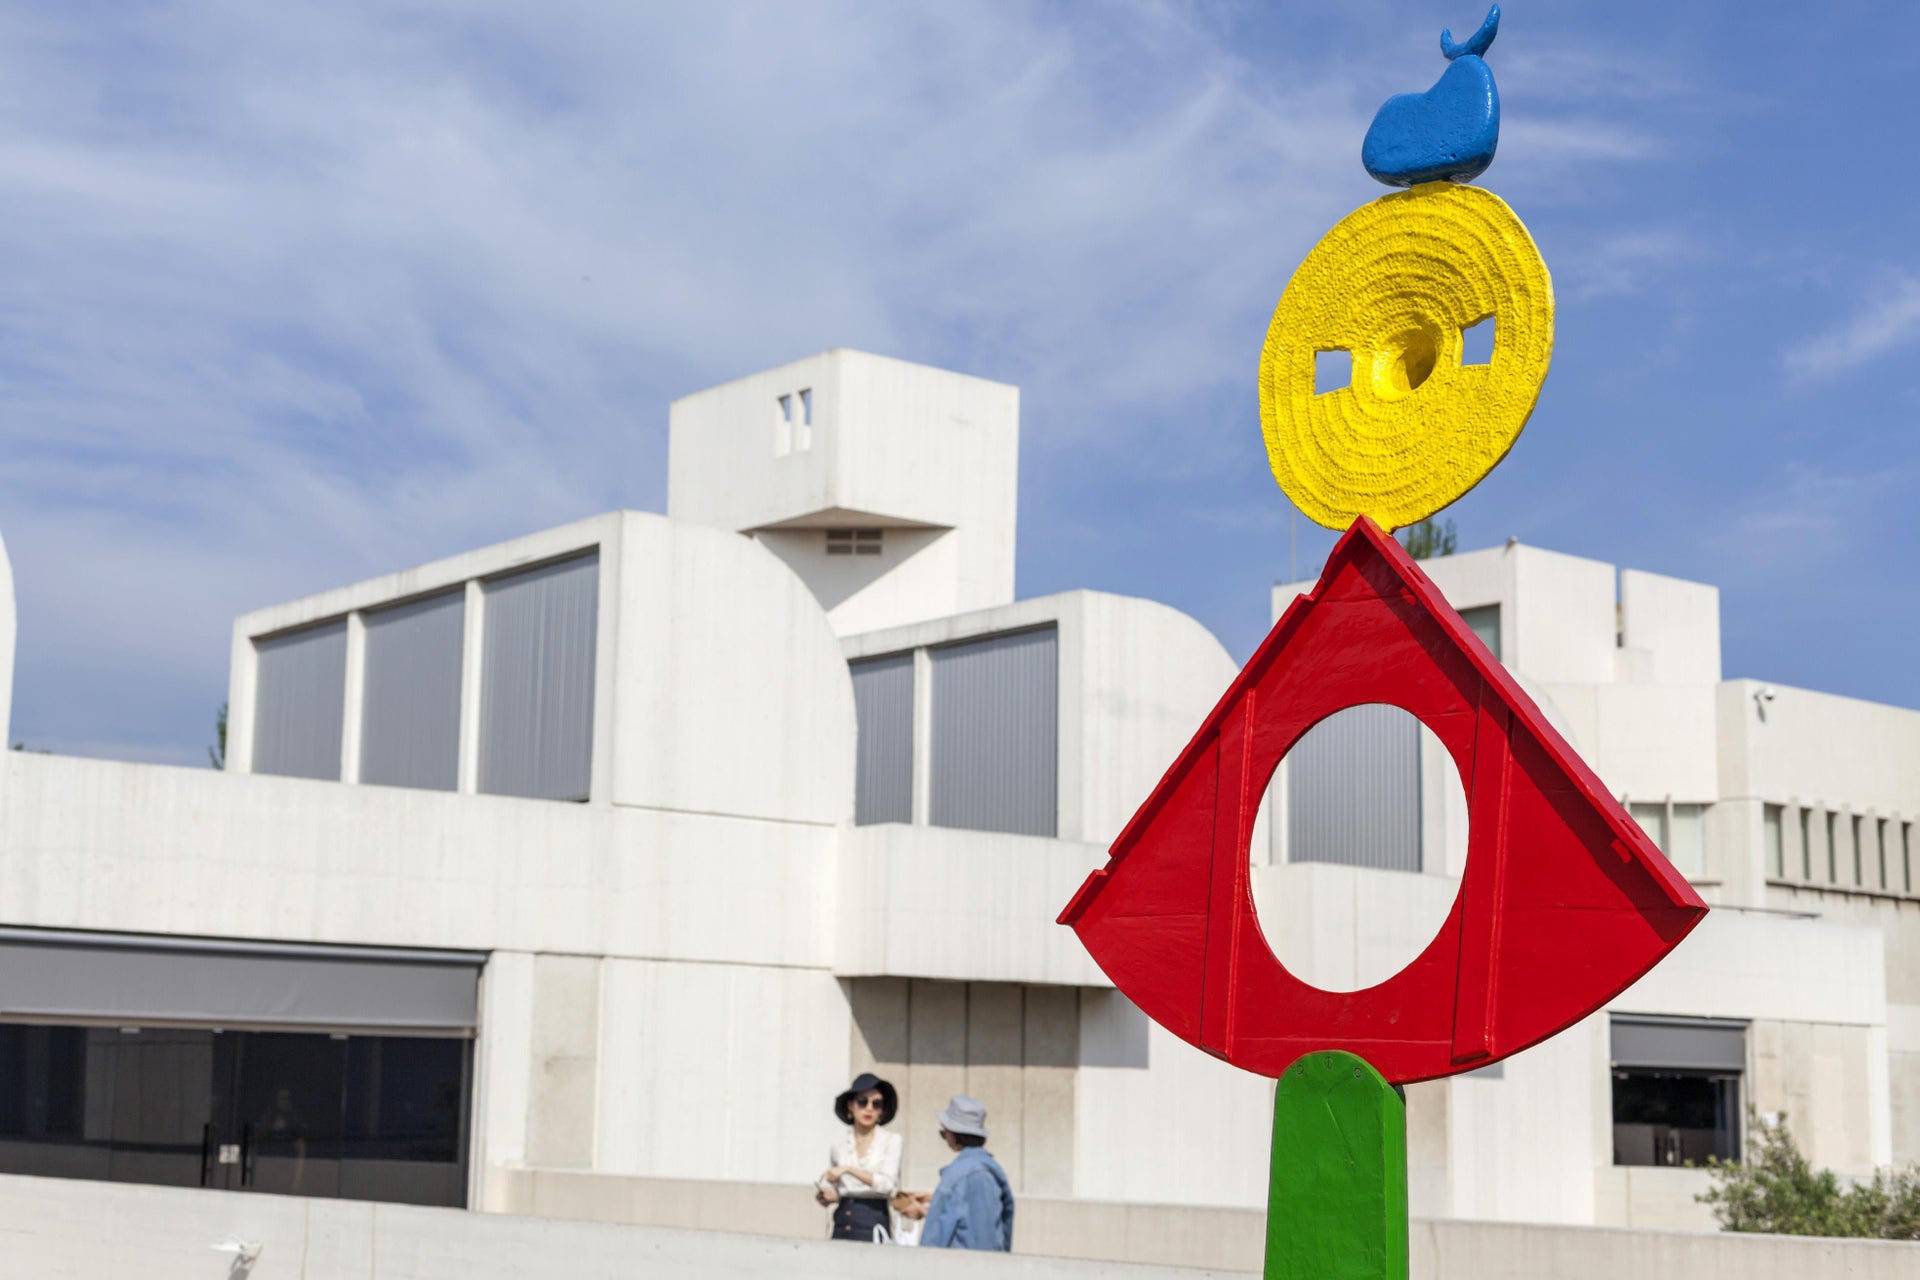 Ingresso da Fundació Joan Miró